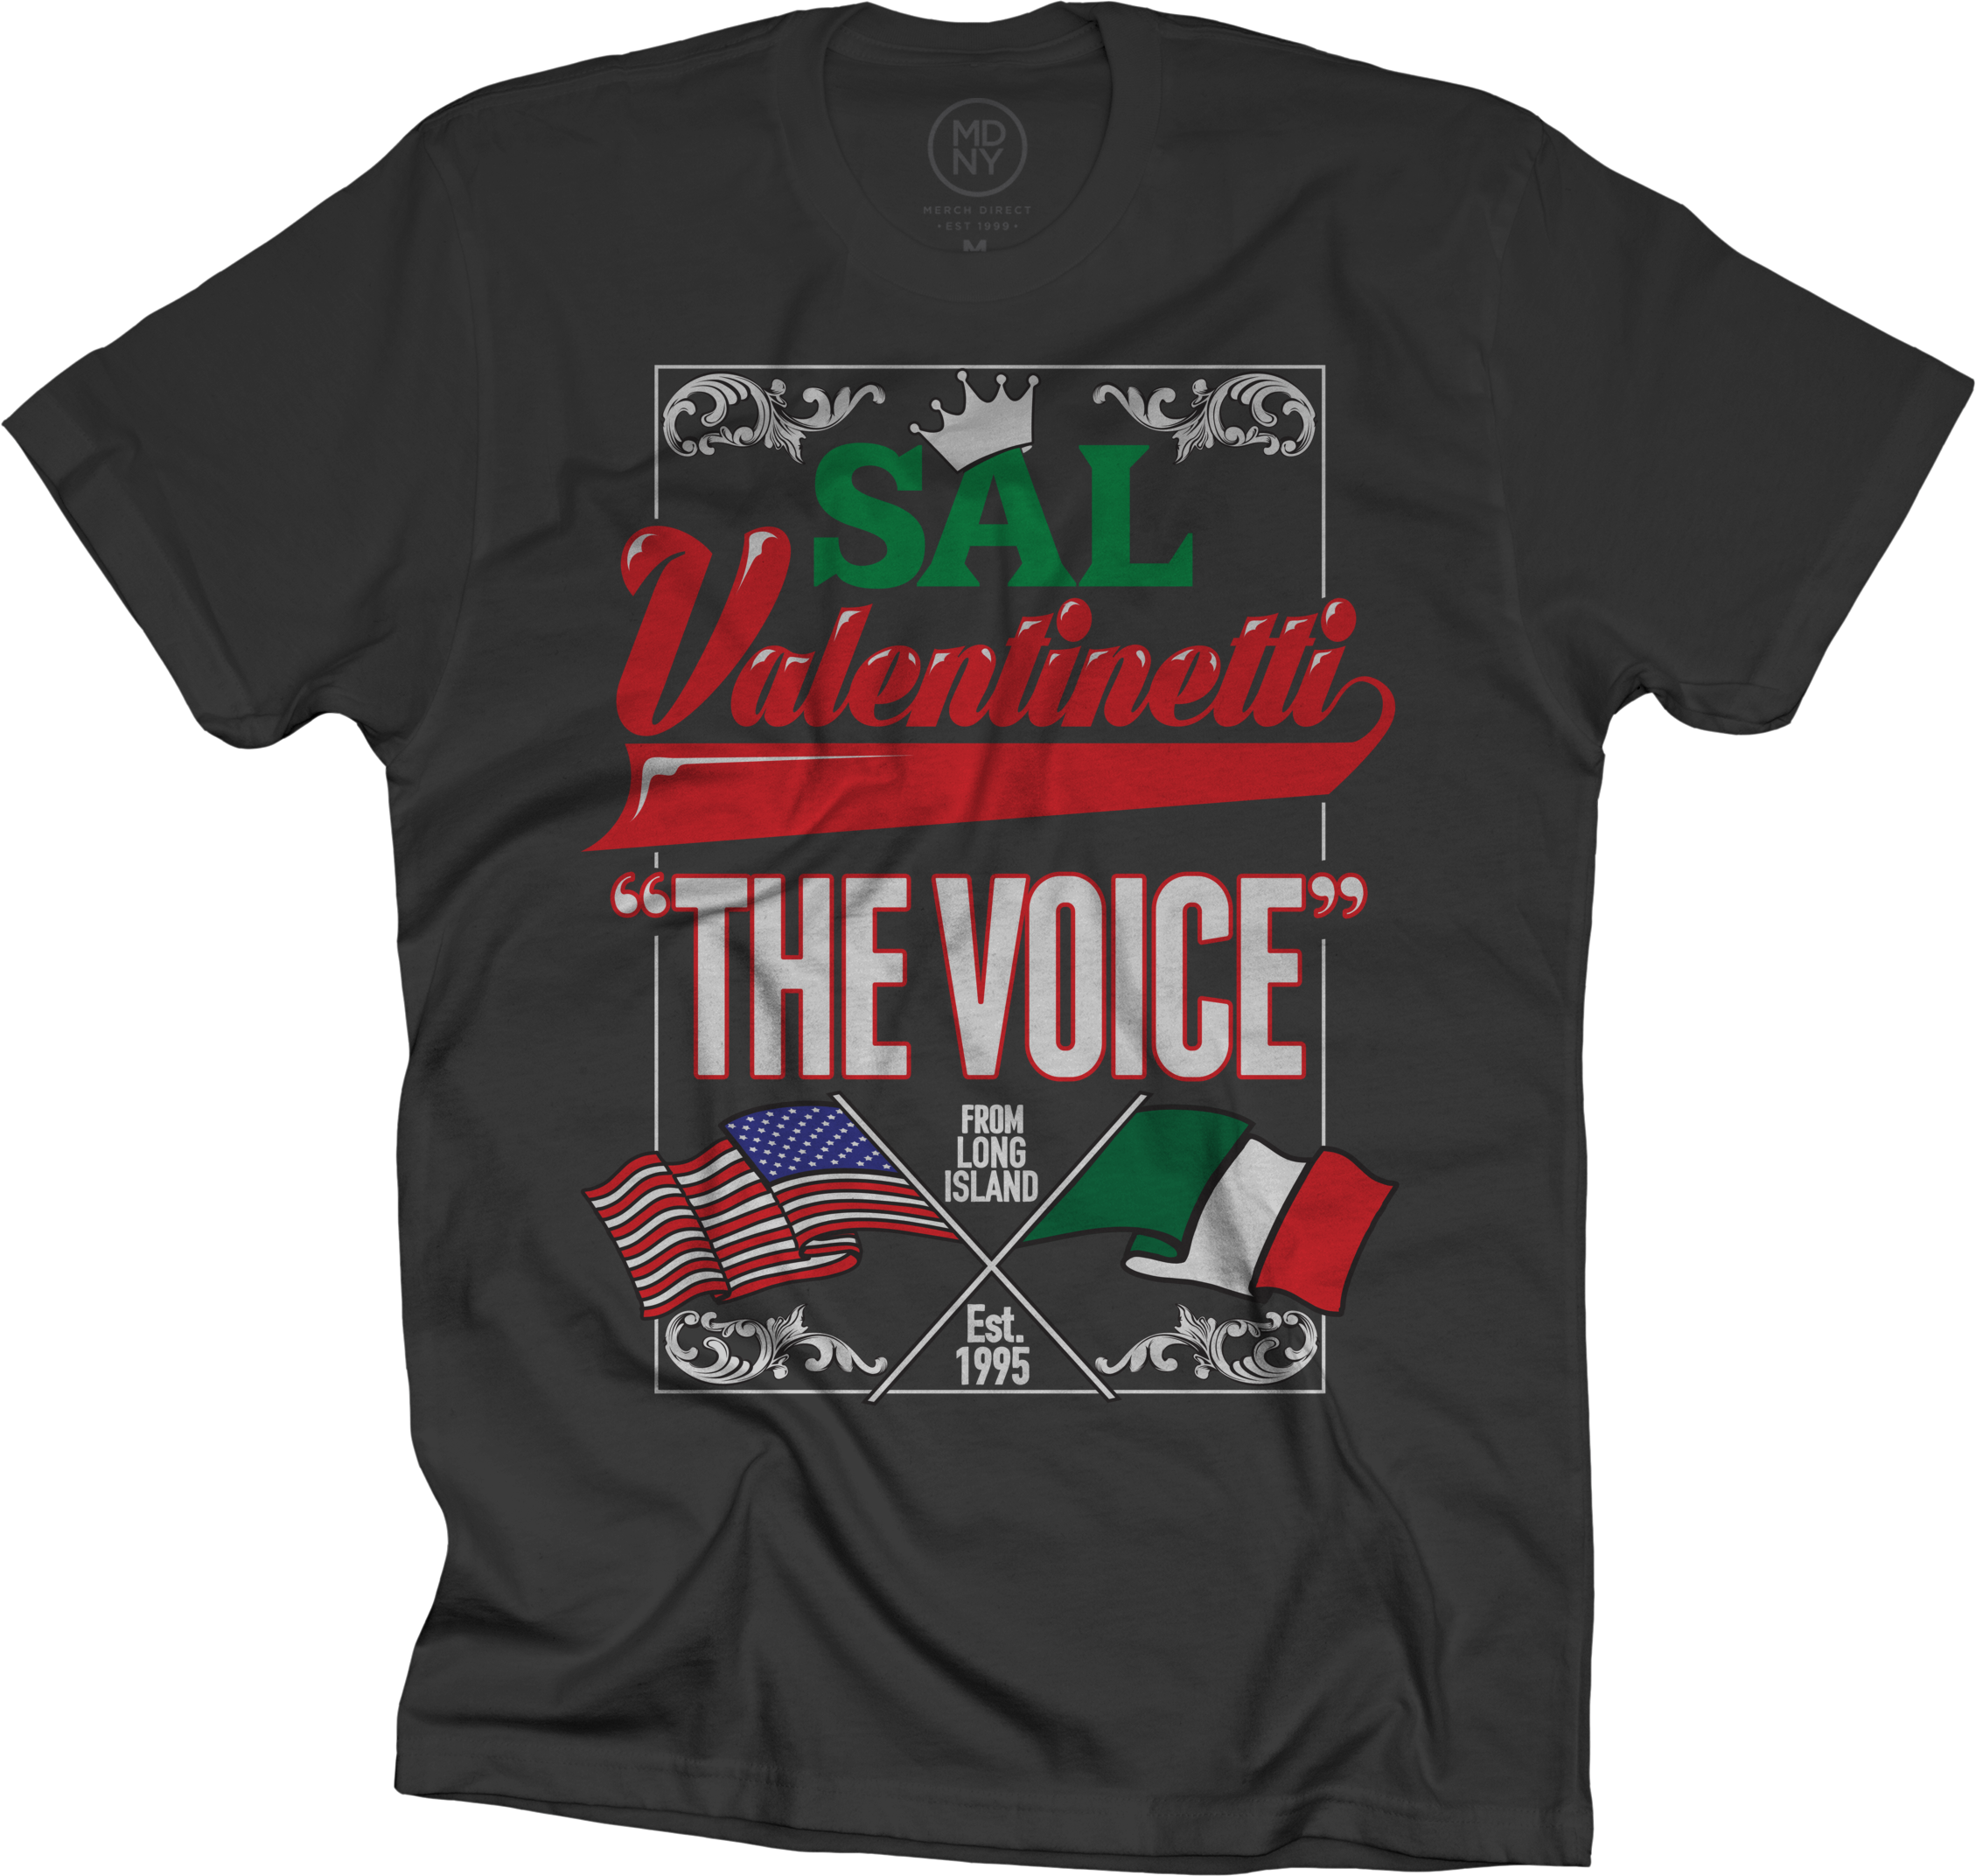 Italian Flag On Black T-shirt $25 - Queen Adam Lambert Shirt (2259x2145), Png Download